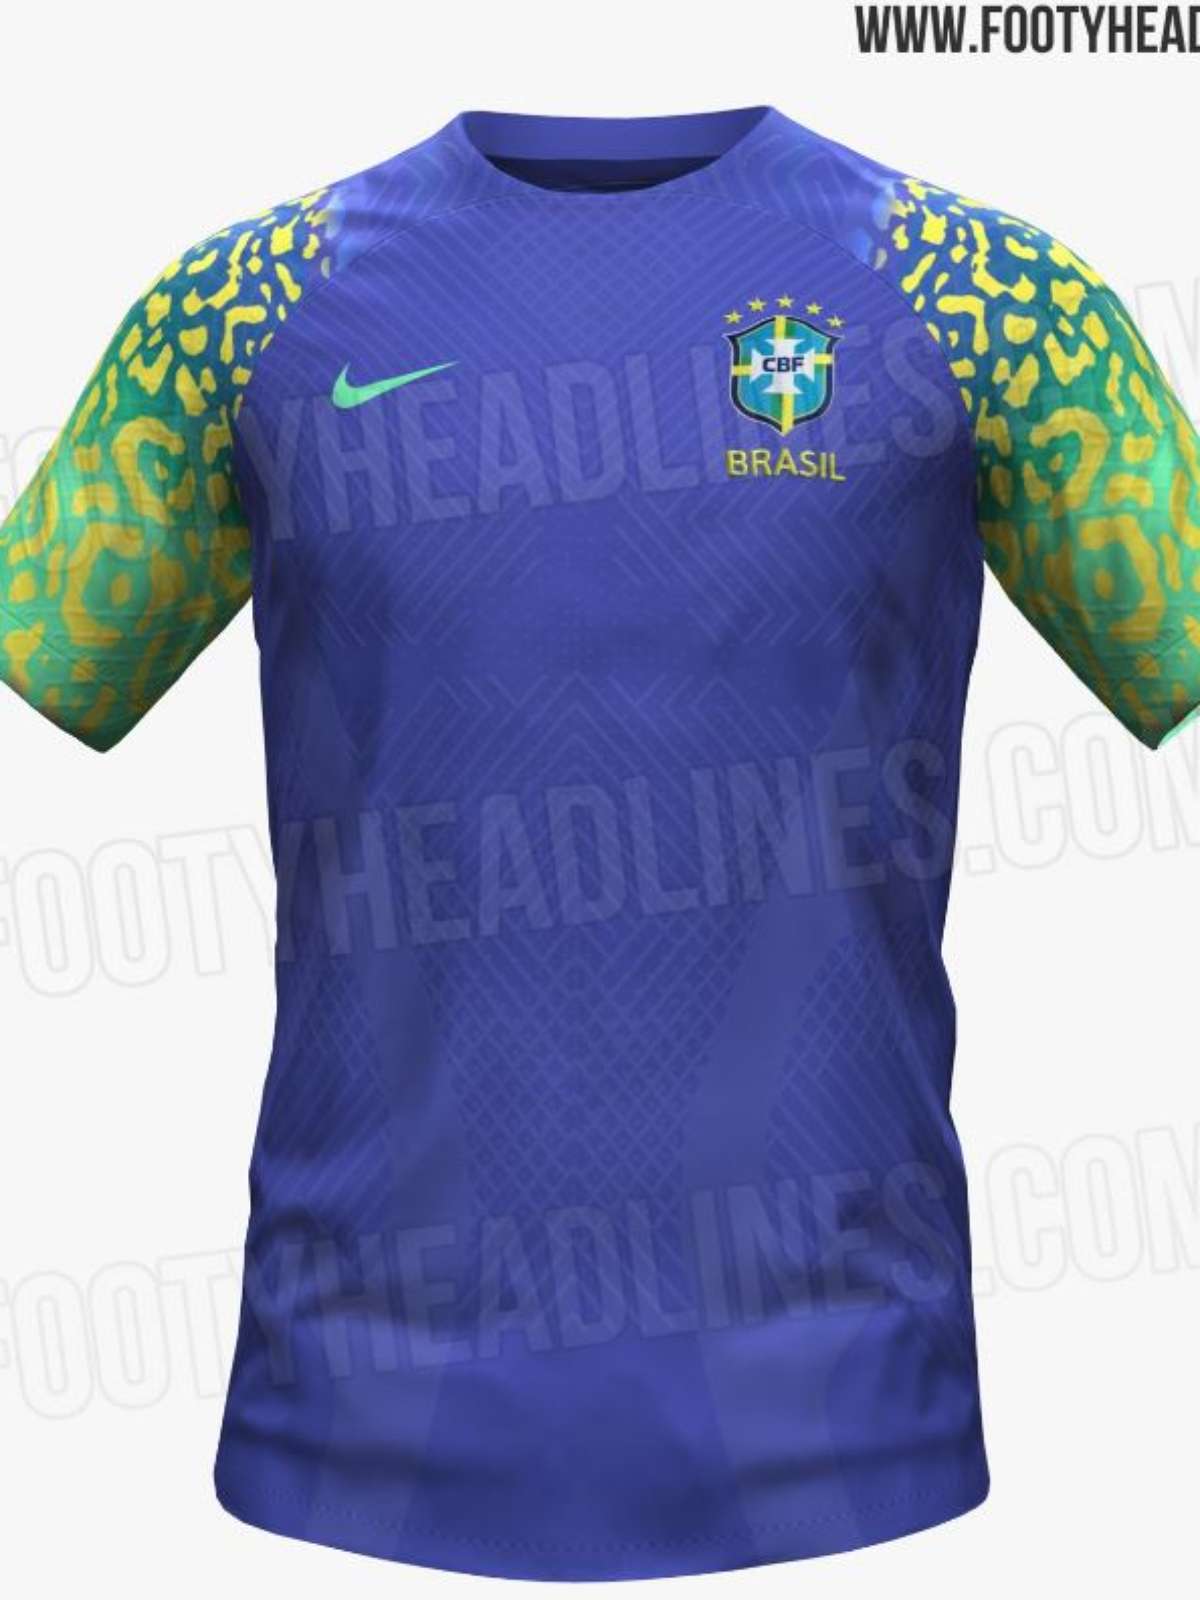 Camisa do Brasil da Copa do Mundo 2022: preço, modelos e onde